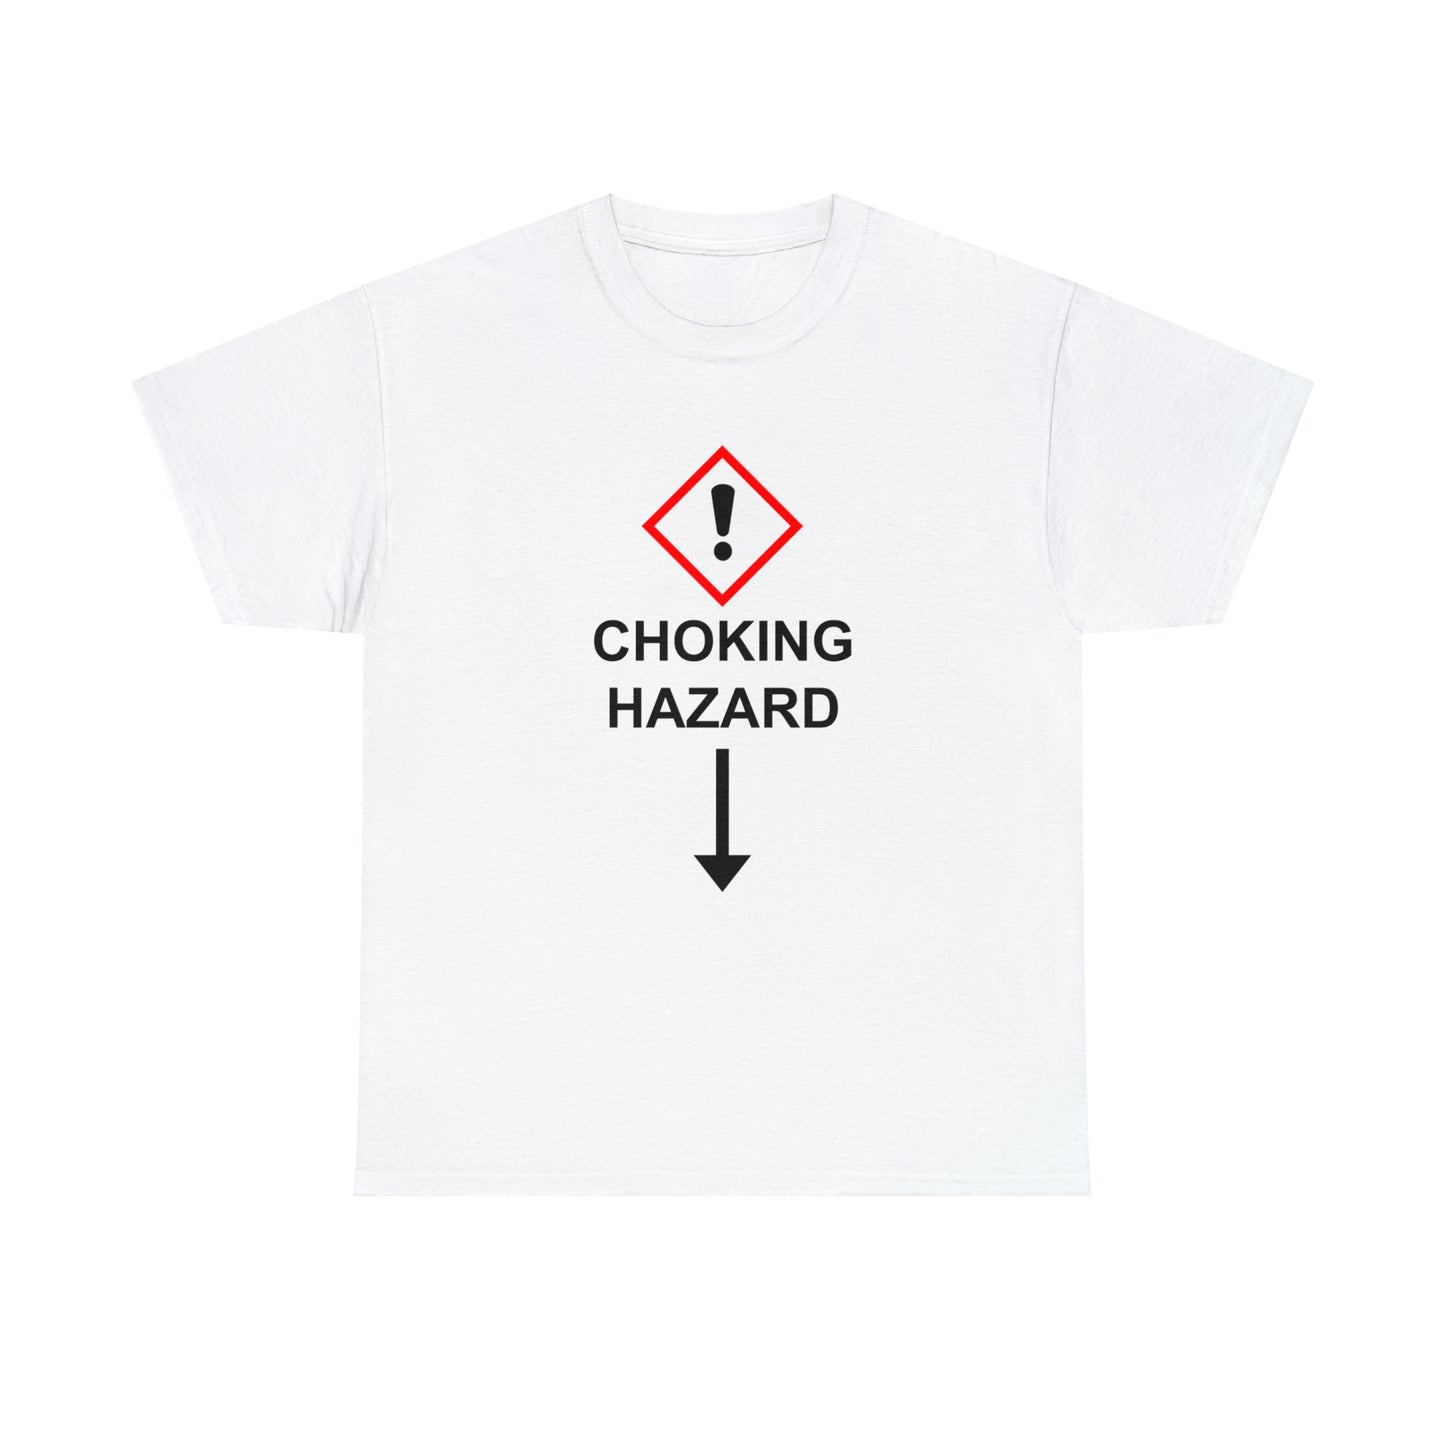 The Safety Hazard™